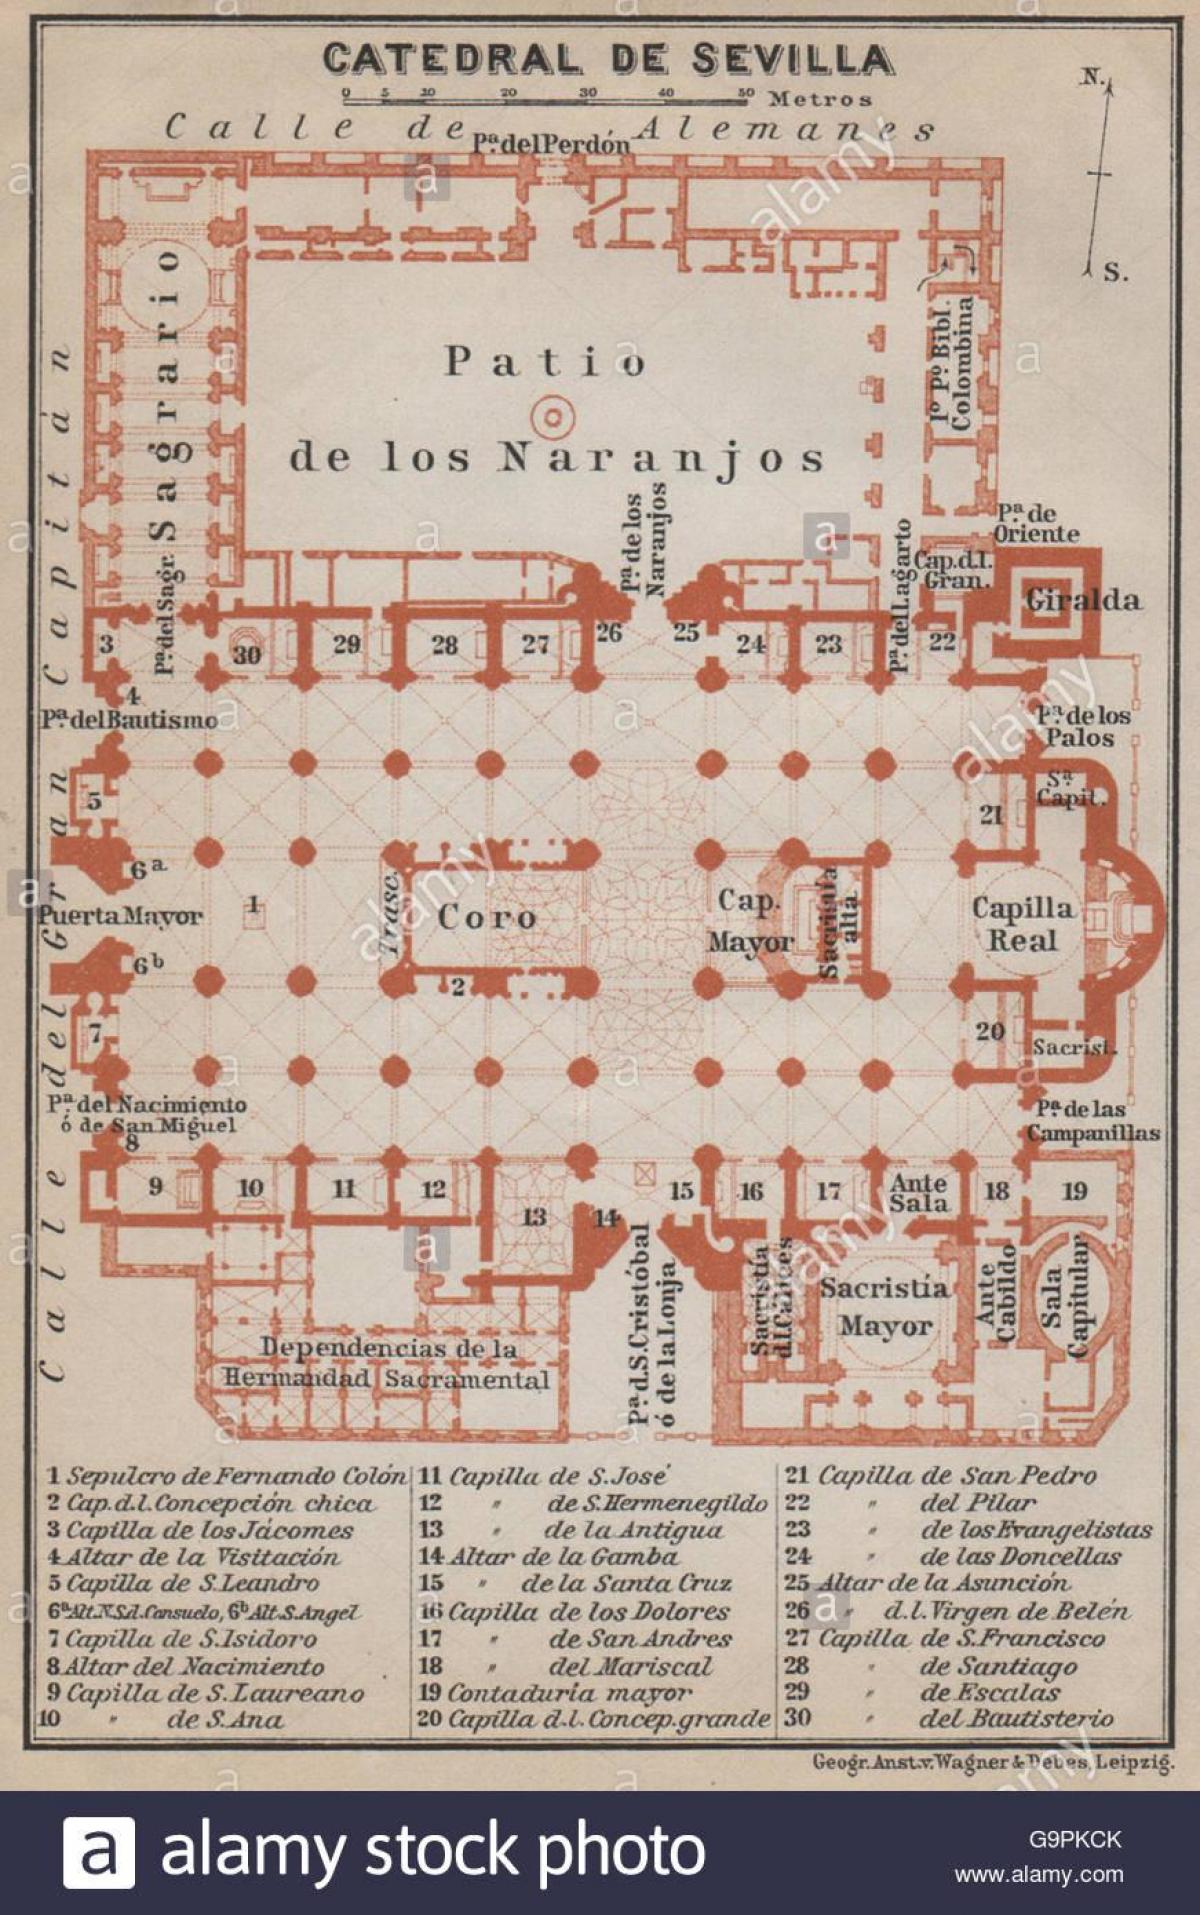 نقشه از کلیسای جامع سویل